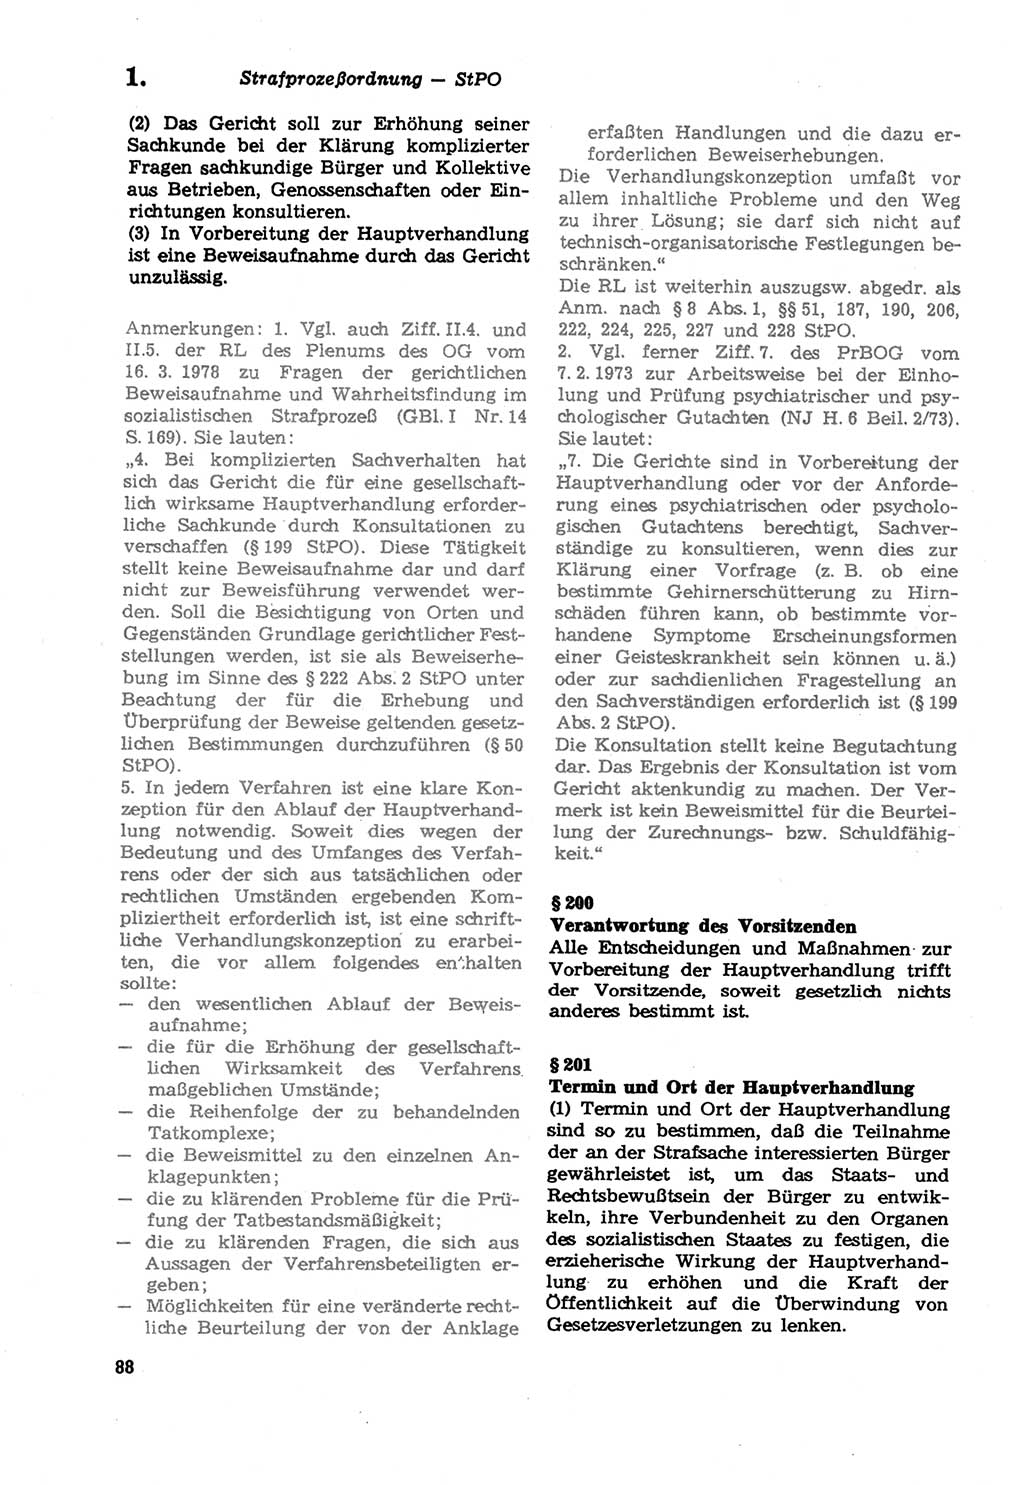 Strafprozeßordnung (StPO) der Deutschen Demokratischen Republik (DDR) sowie angrenzende Gesetze und Bestimmungen 1979, Seite 88 (StPO DDR Ges. Best. 1979, S. 88)